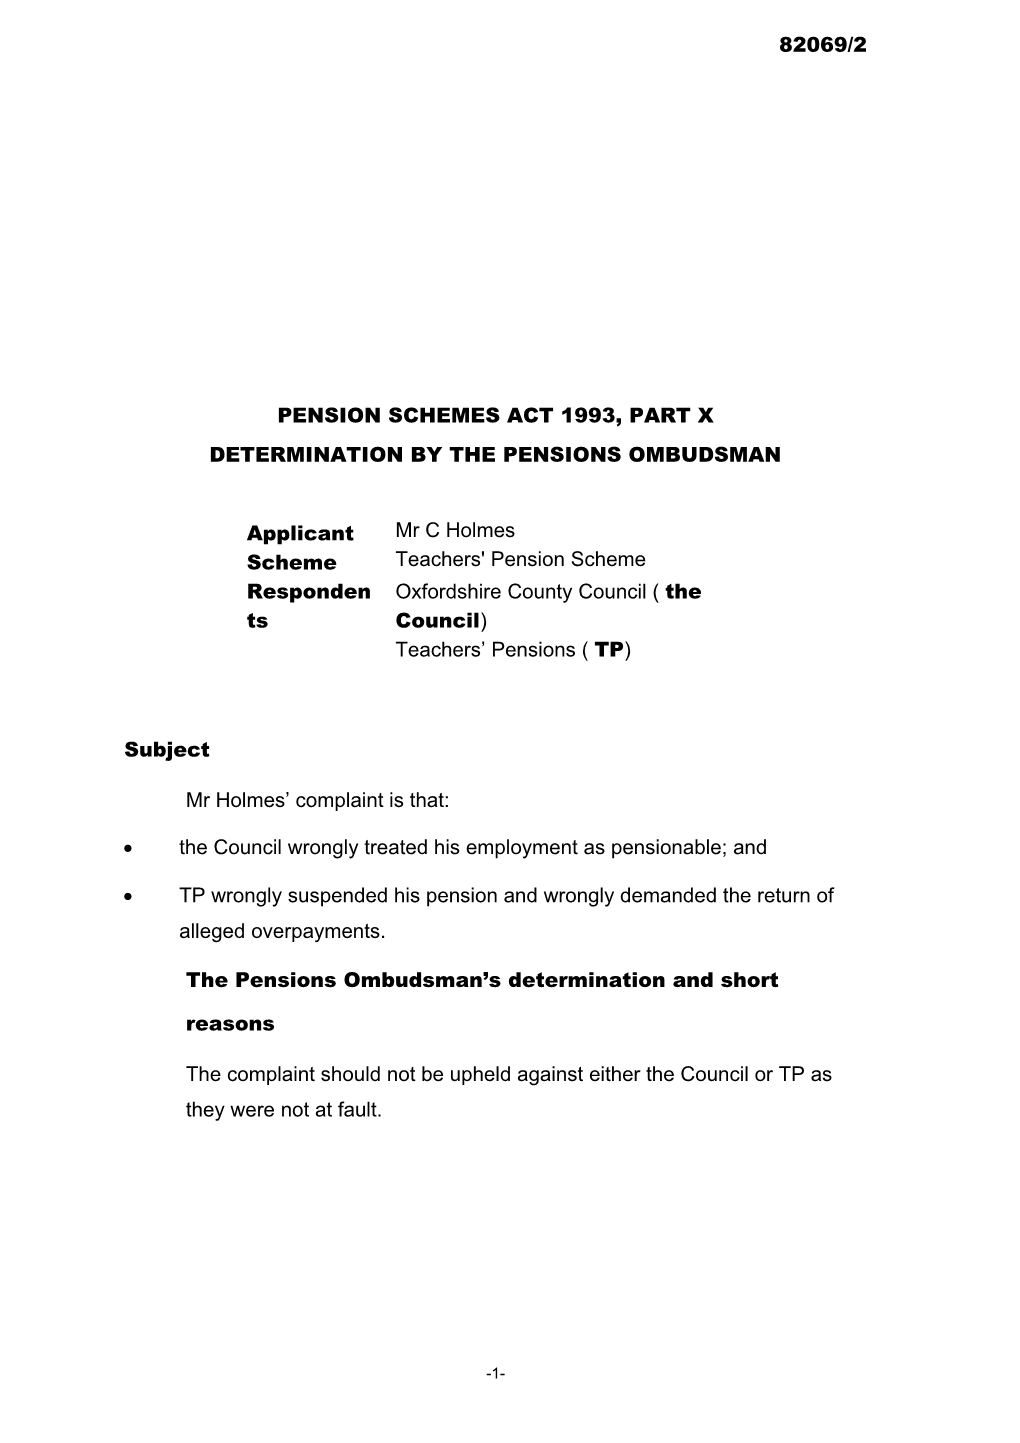 Pension Schemes Act 1993, Part X s51